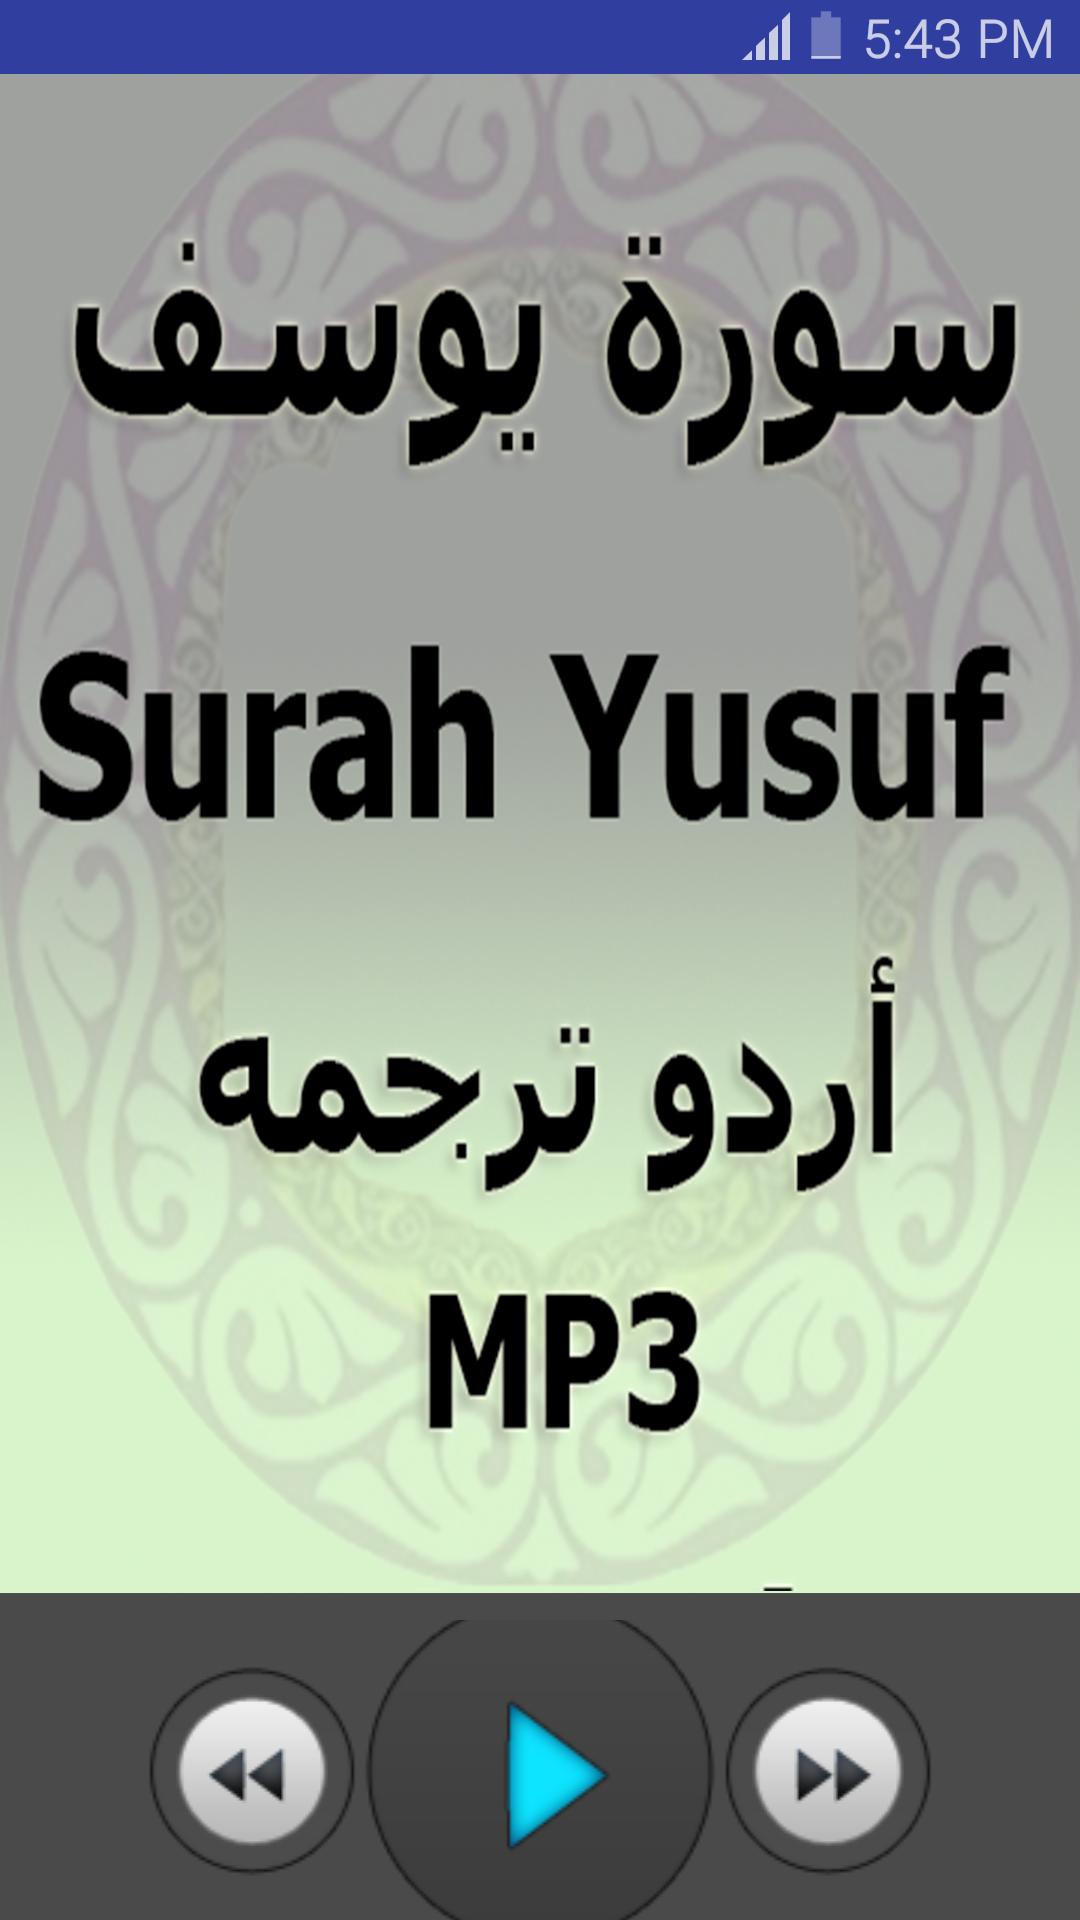 Surah yousaf Full Audio Mp3 Urdu Translation for Android - APK Download